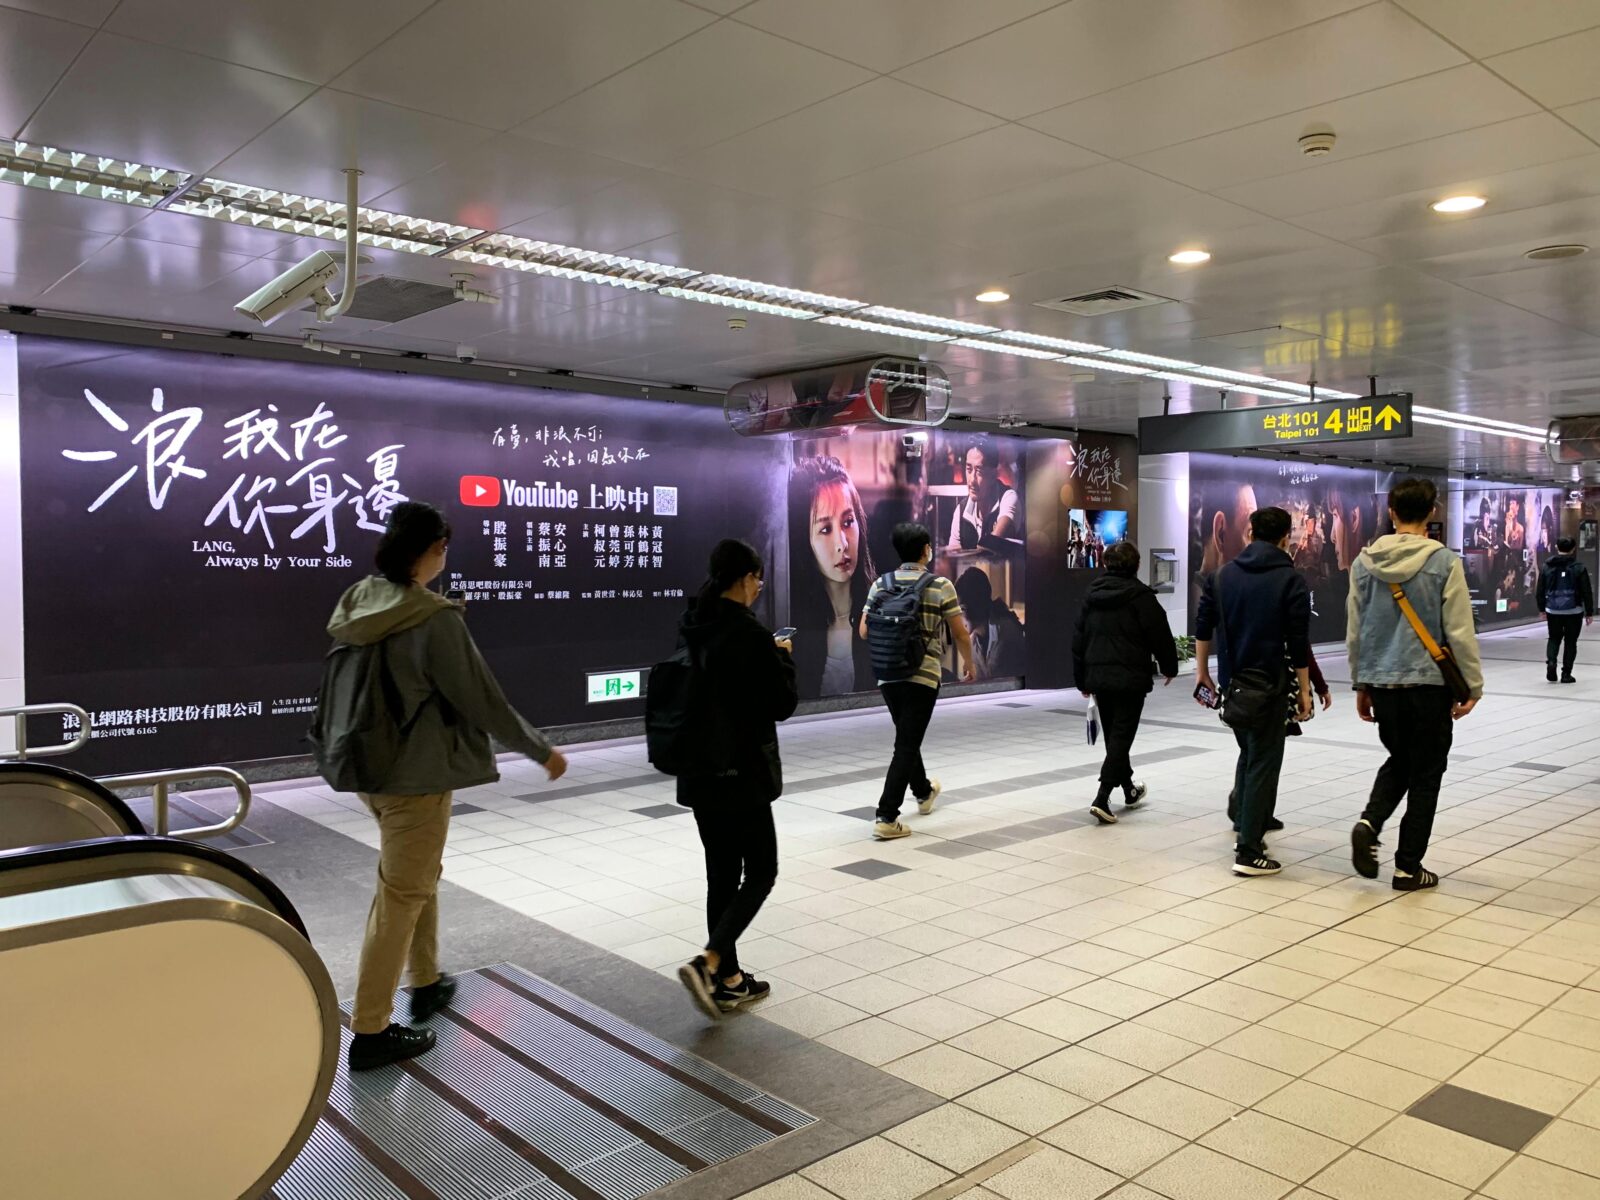 全台灣最多元 家外交通媒體集團_公車廣告 捷運廣告 高鐵廣告 台鐵廣告 機場廣告 影廳廣告